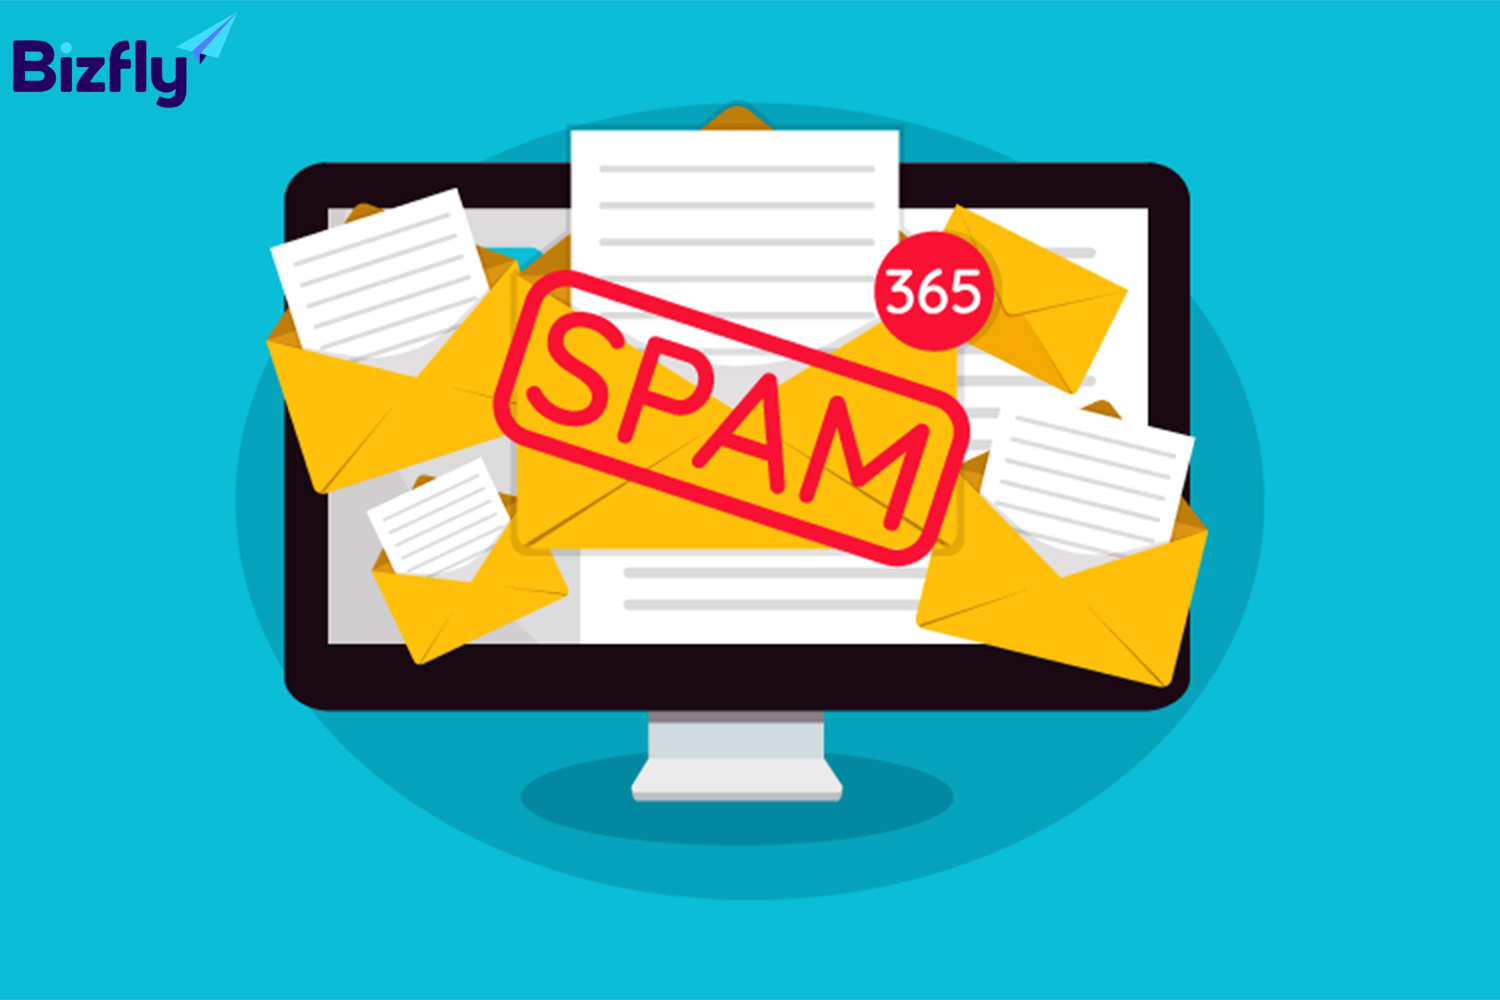 Tránh sử dụng những từ spam trong email để không bị đưa vào blacklist